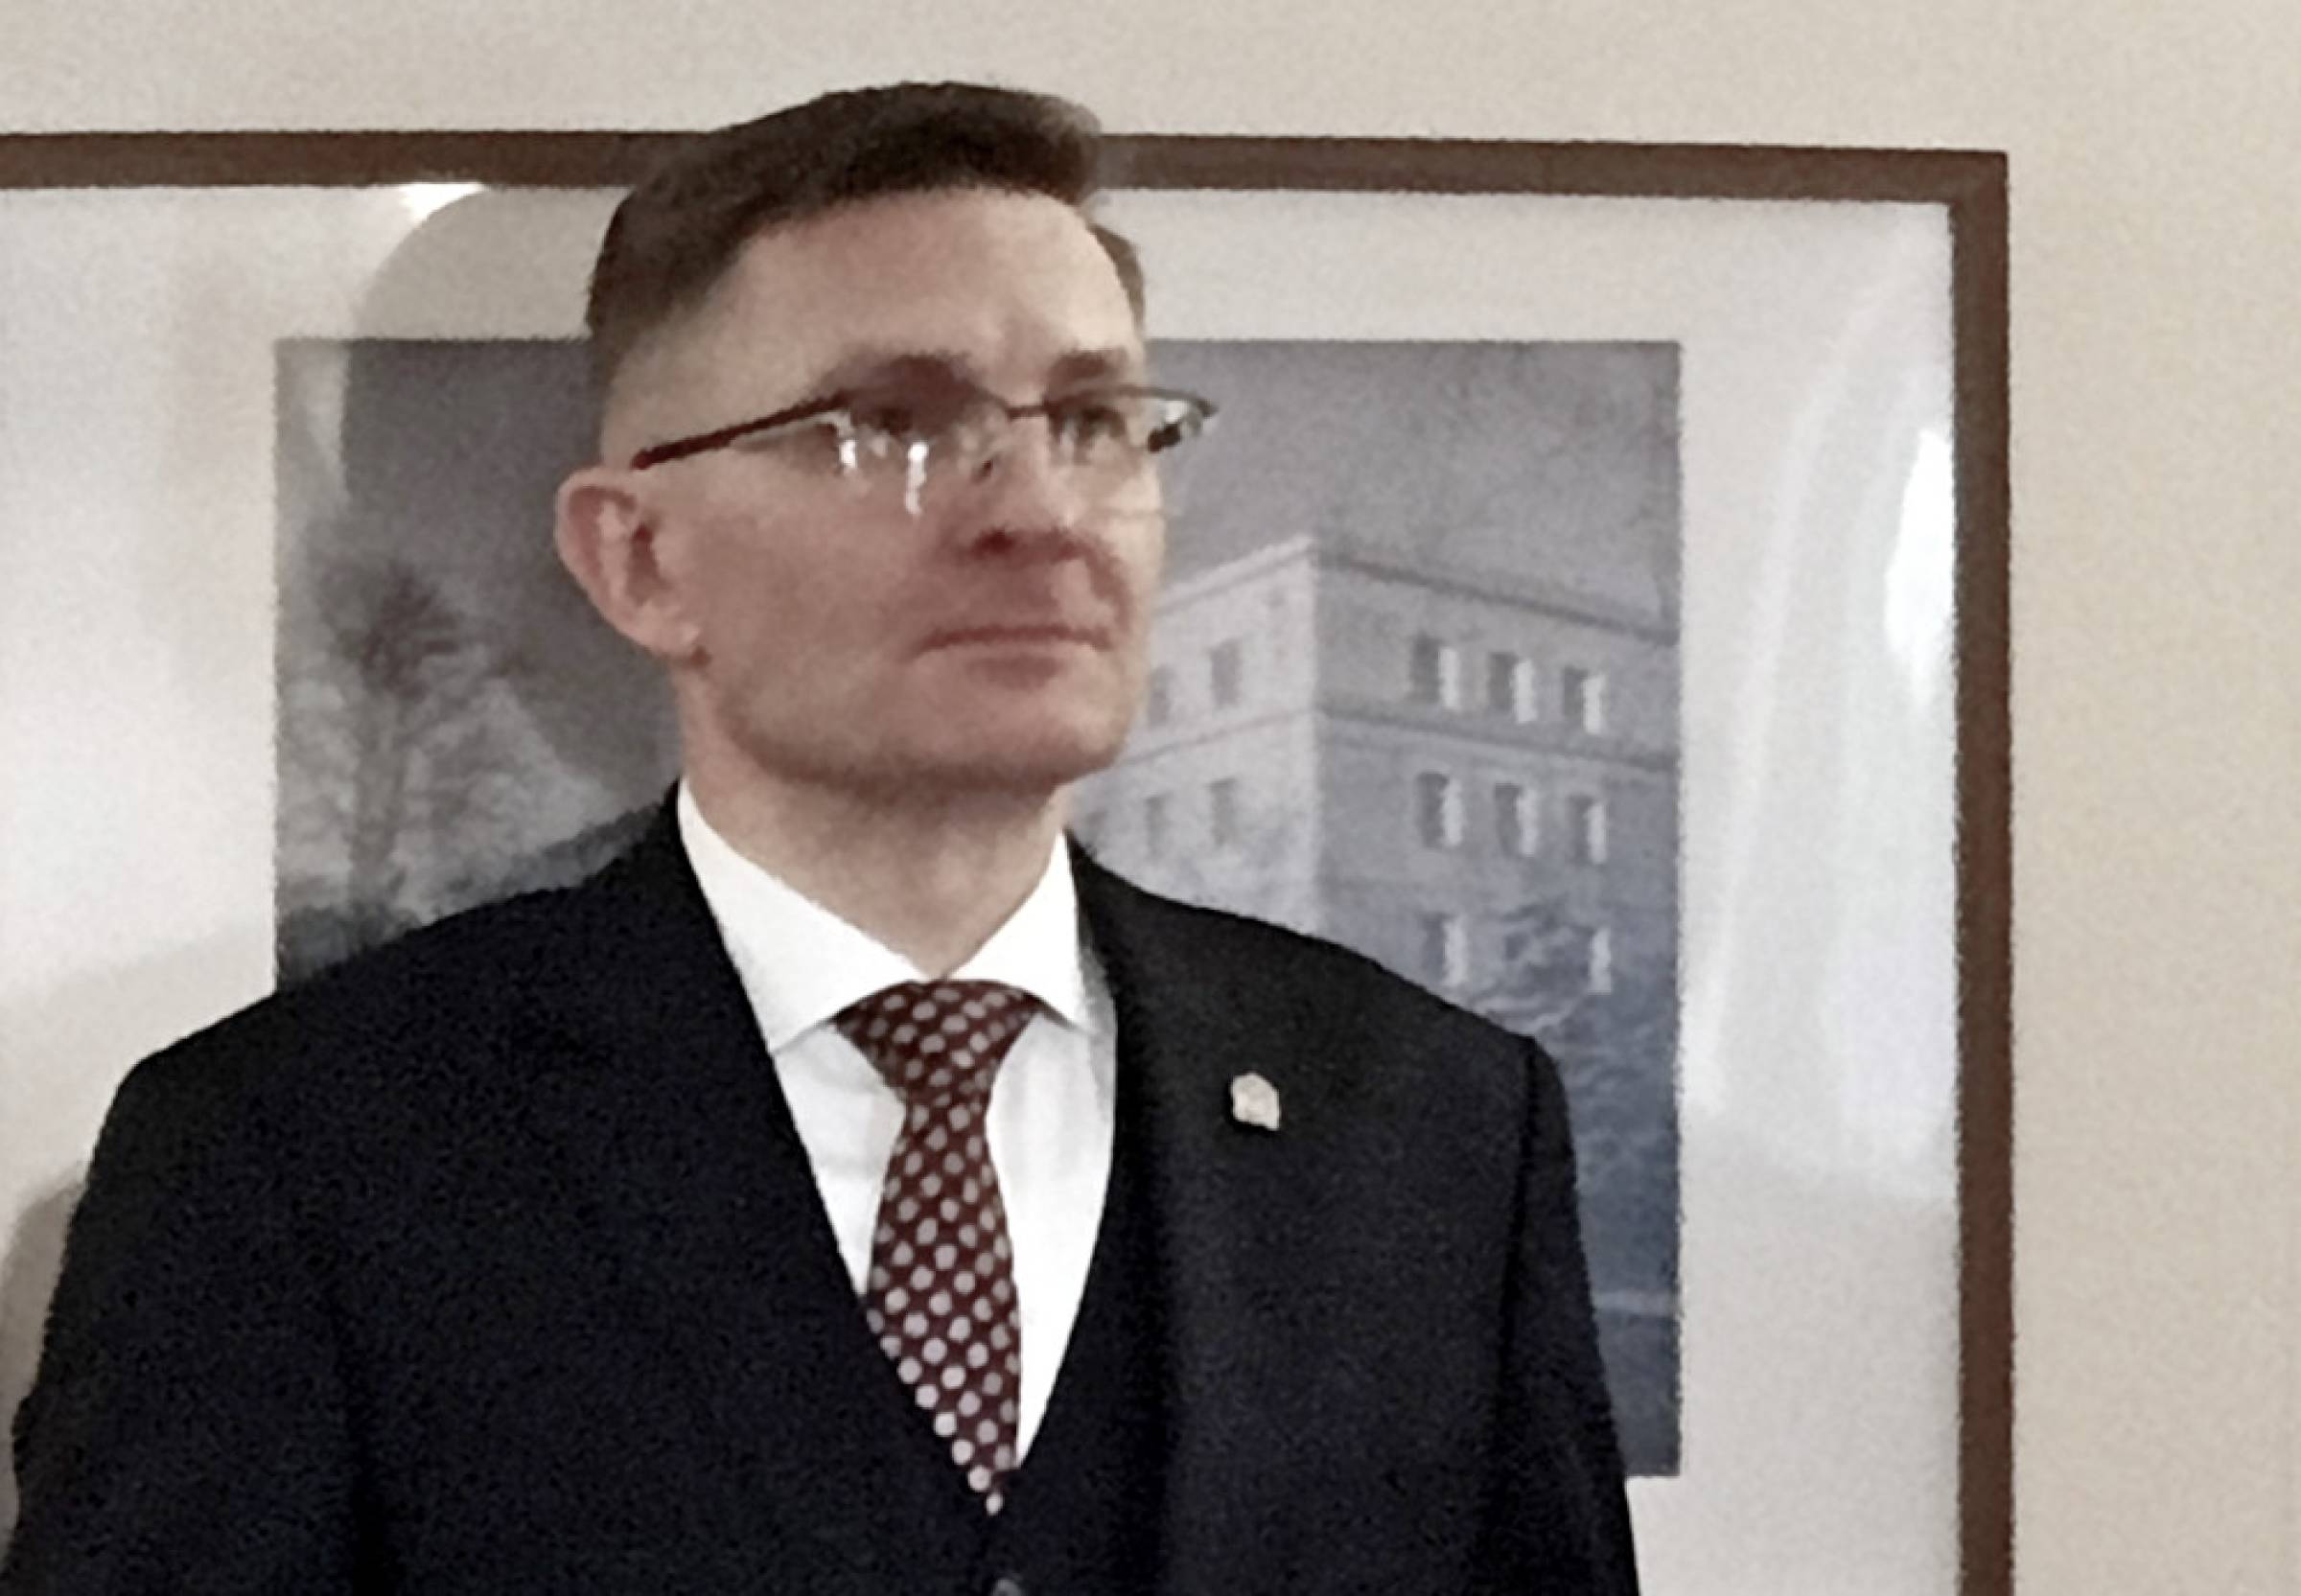 Prokurator Krajowy powierzył pełnienie funkcji Prokuratora Okręgowego w Zielonej Górze Robertowi Kmieciakowi